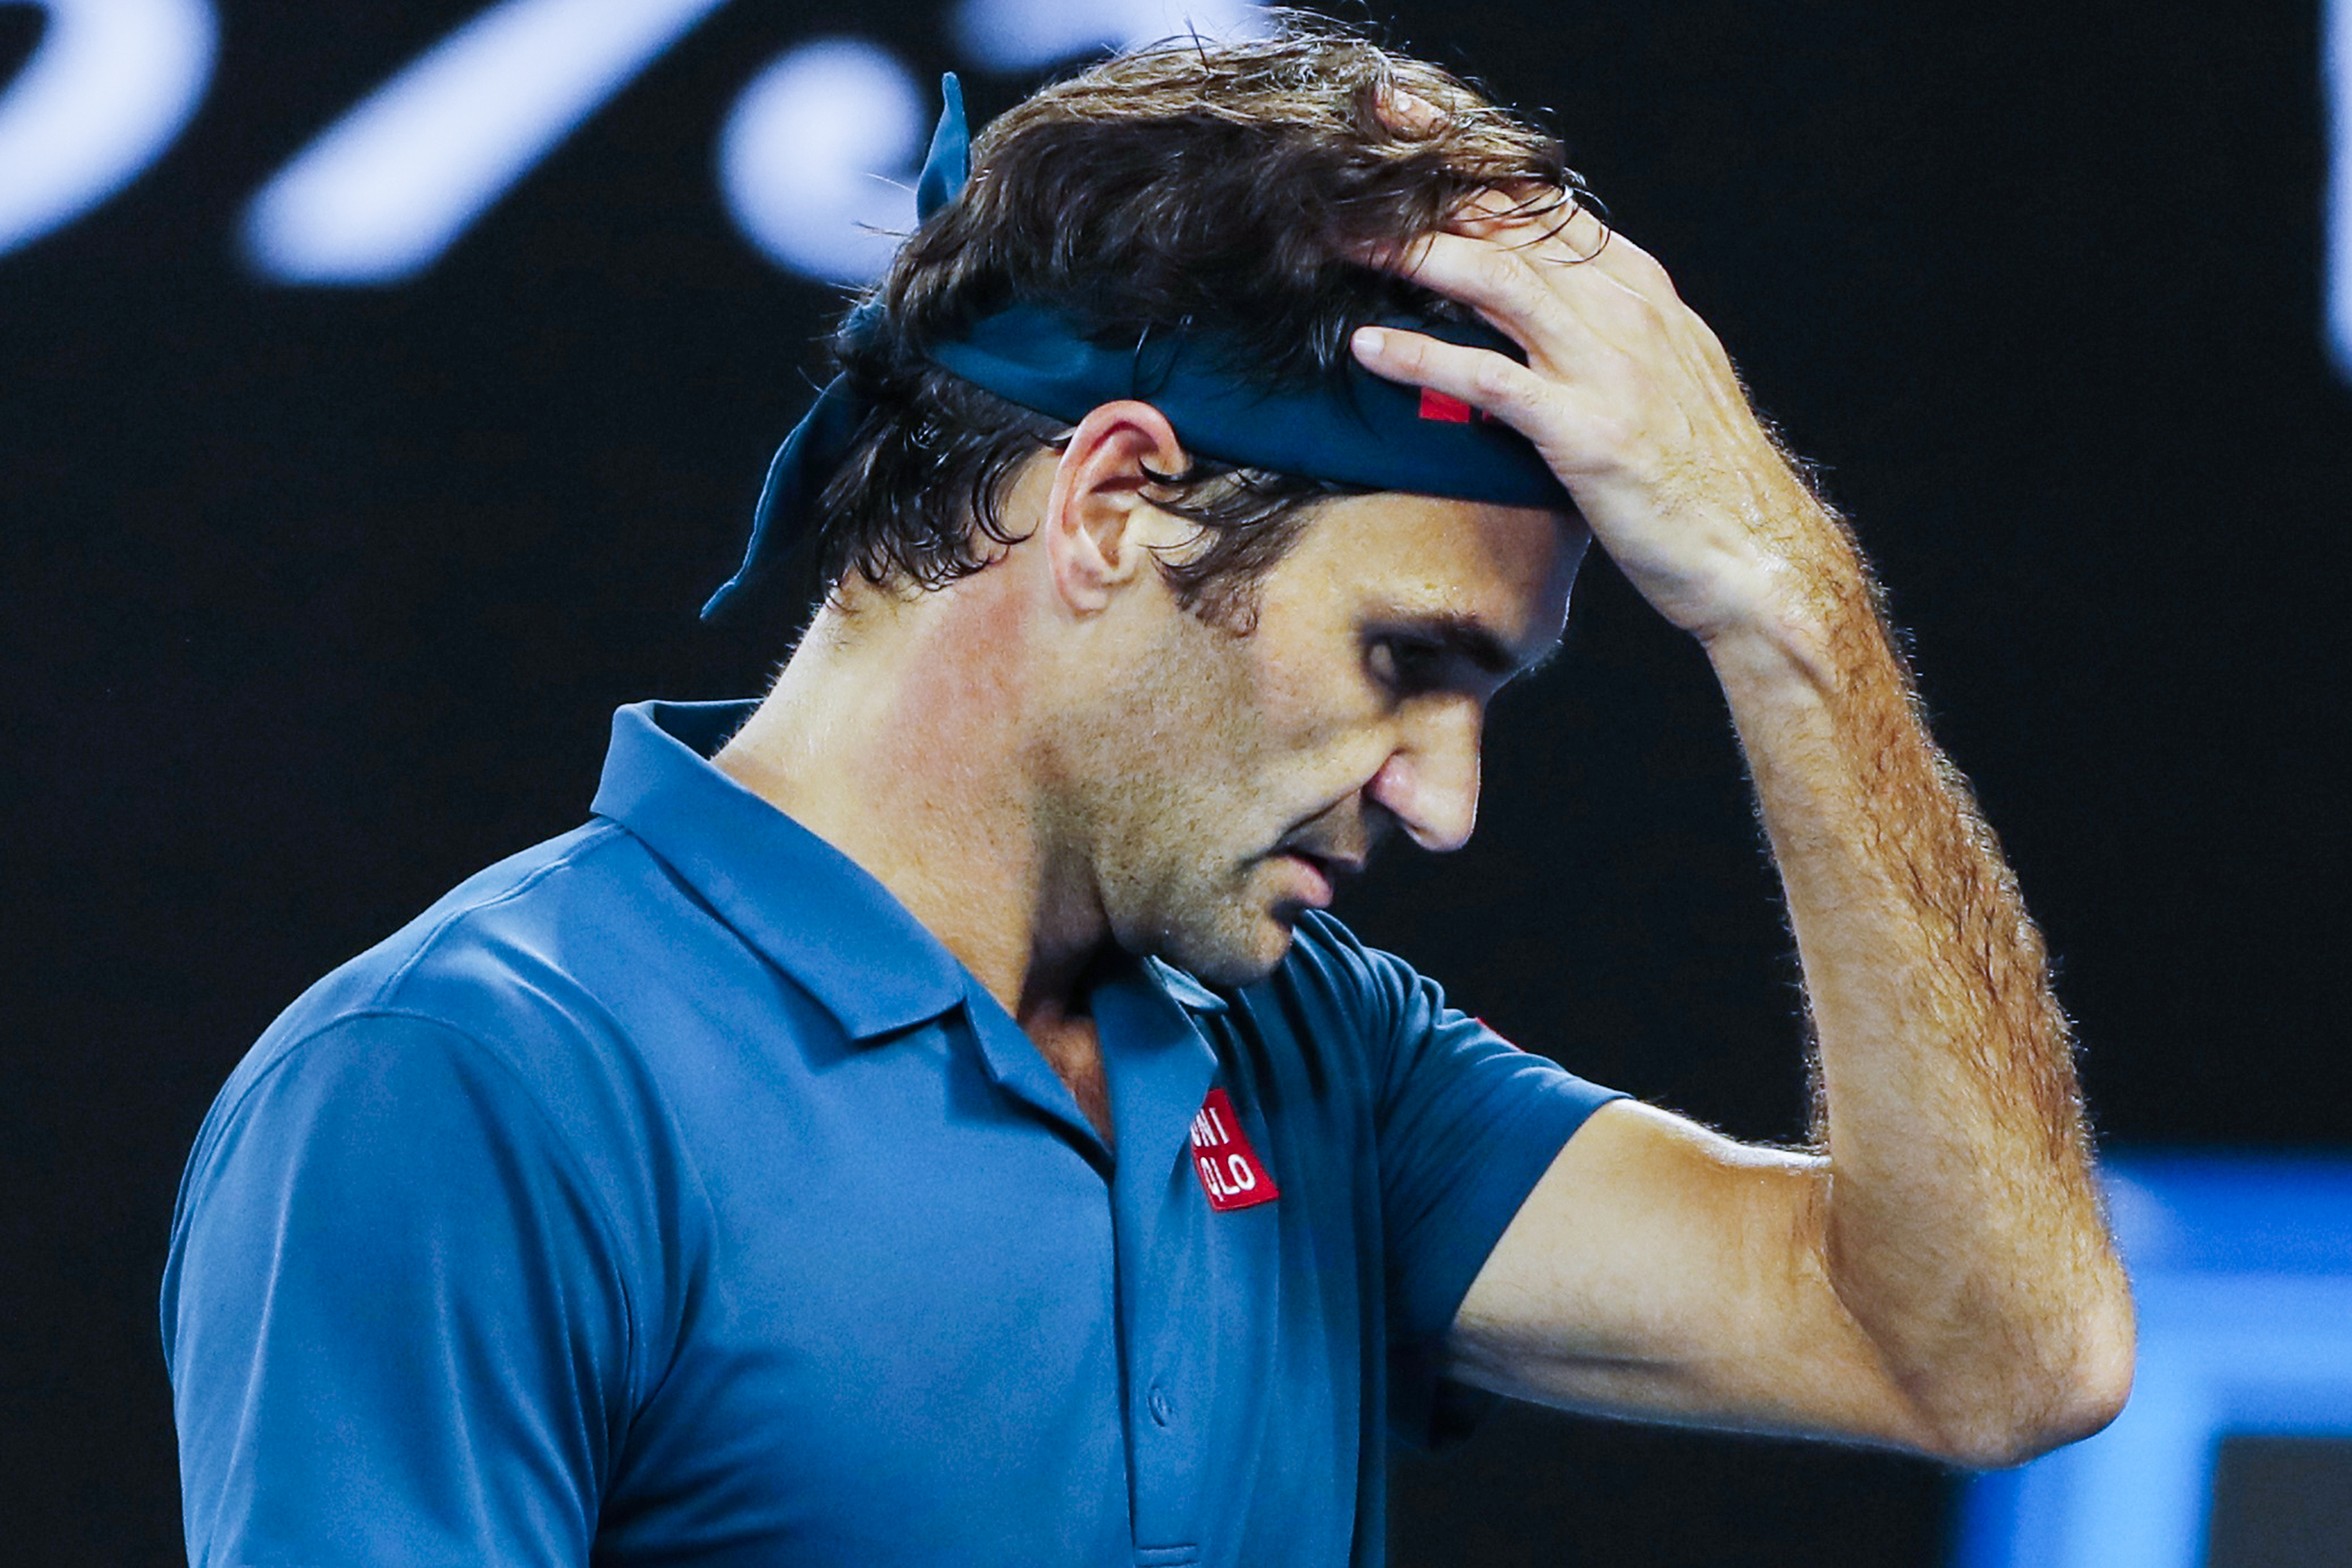 Eliminado por jovem, Federer ironiza ‘troca de geração’ no tênis